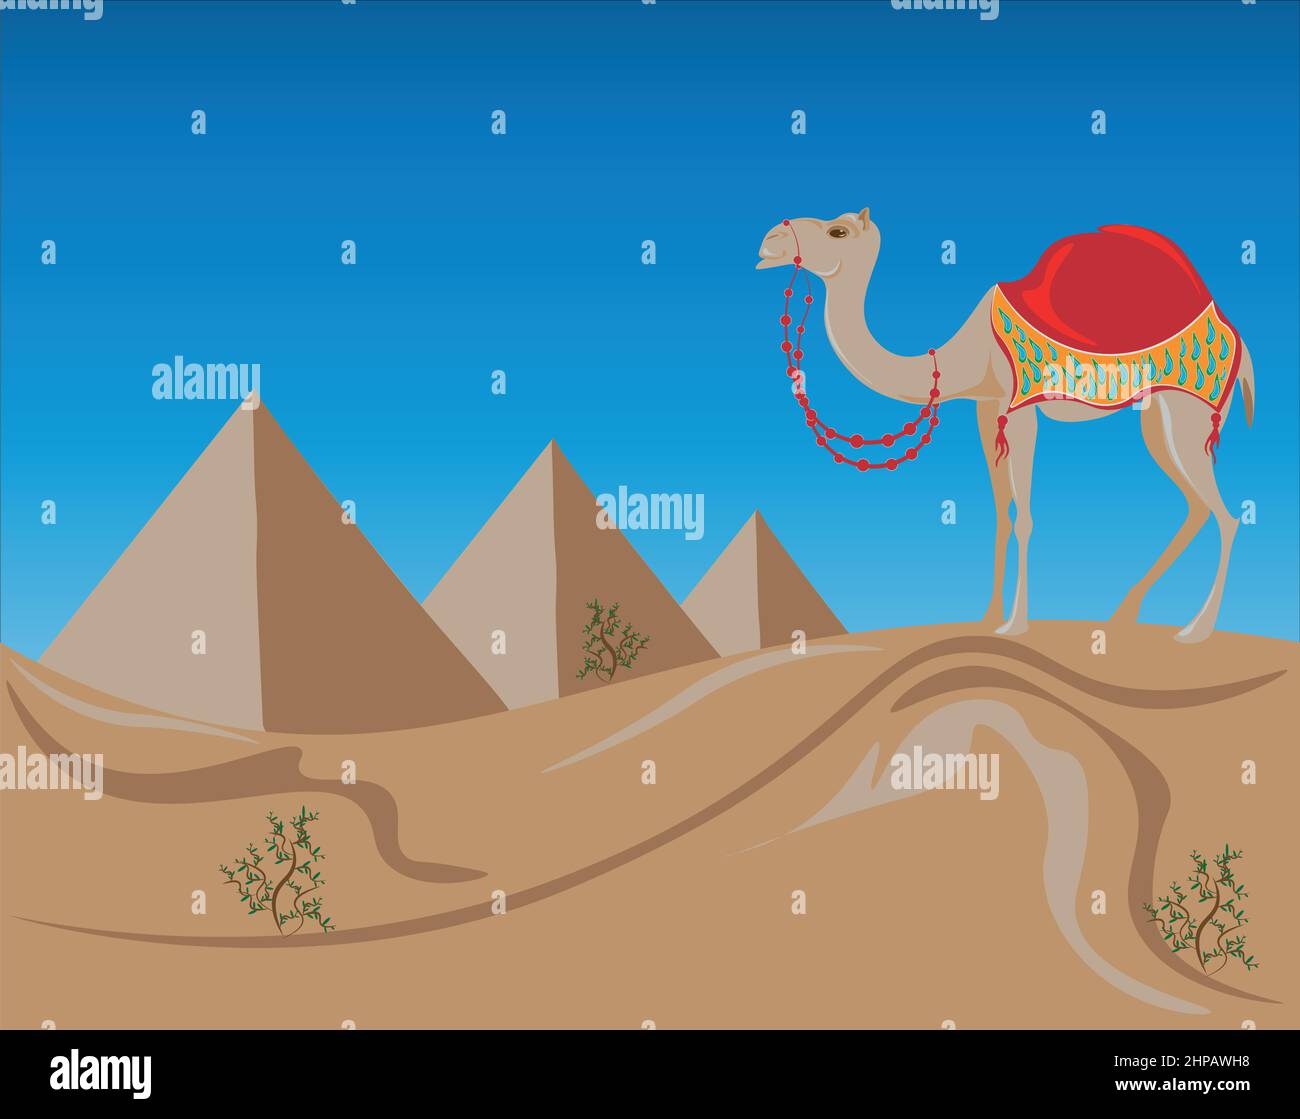 Un joli chameau sur le fond des trois pyramides d'Égypte. Le voyage vers l'est enchante l'esprit et l'âme. Magnifiques dunes désertiques, mystérieuse pyra Illustration de Vecteur